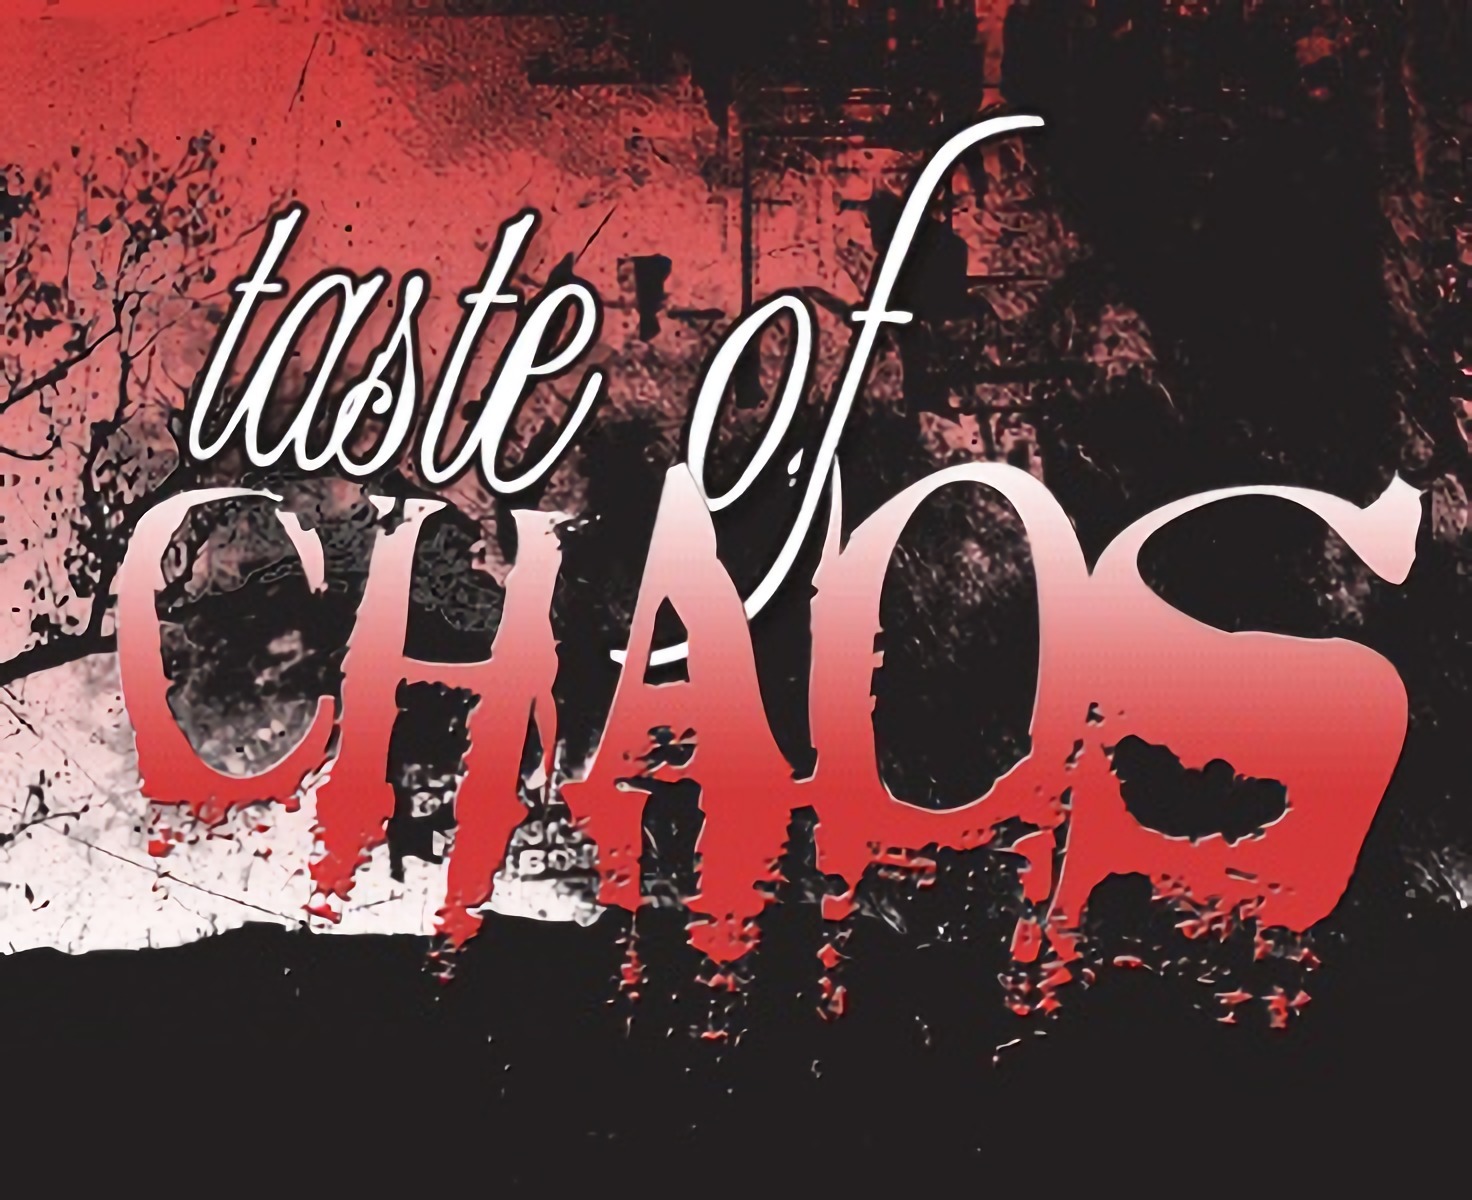 Объявлены даты тура «Taste Of Chaos 2006» с участием Deftones